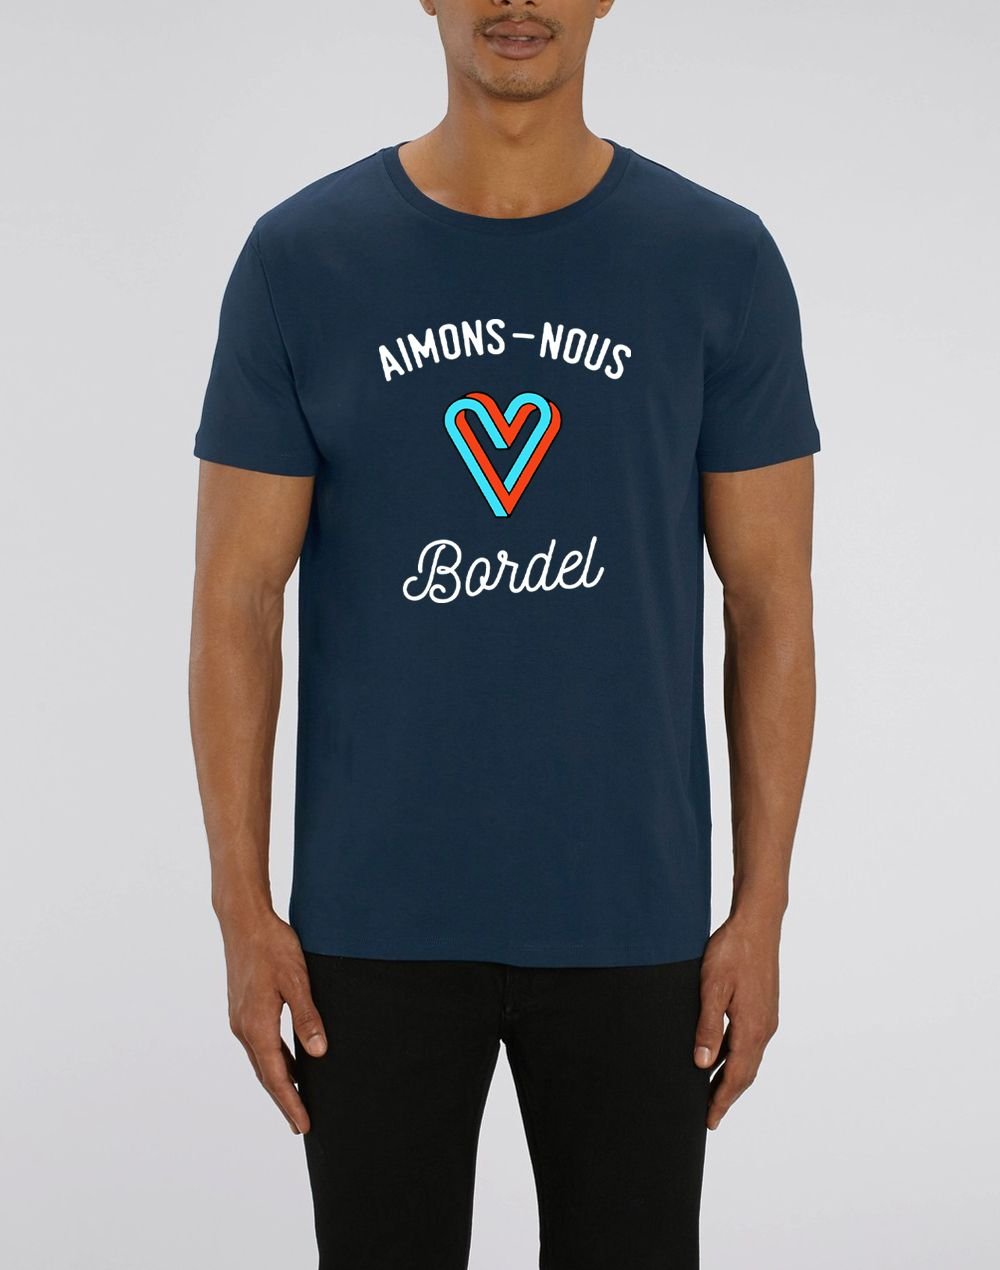 Tee-shirt "Aimons-nous bordel"